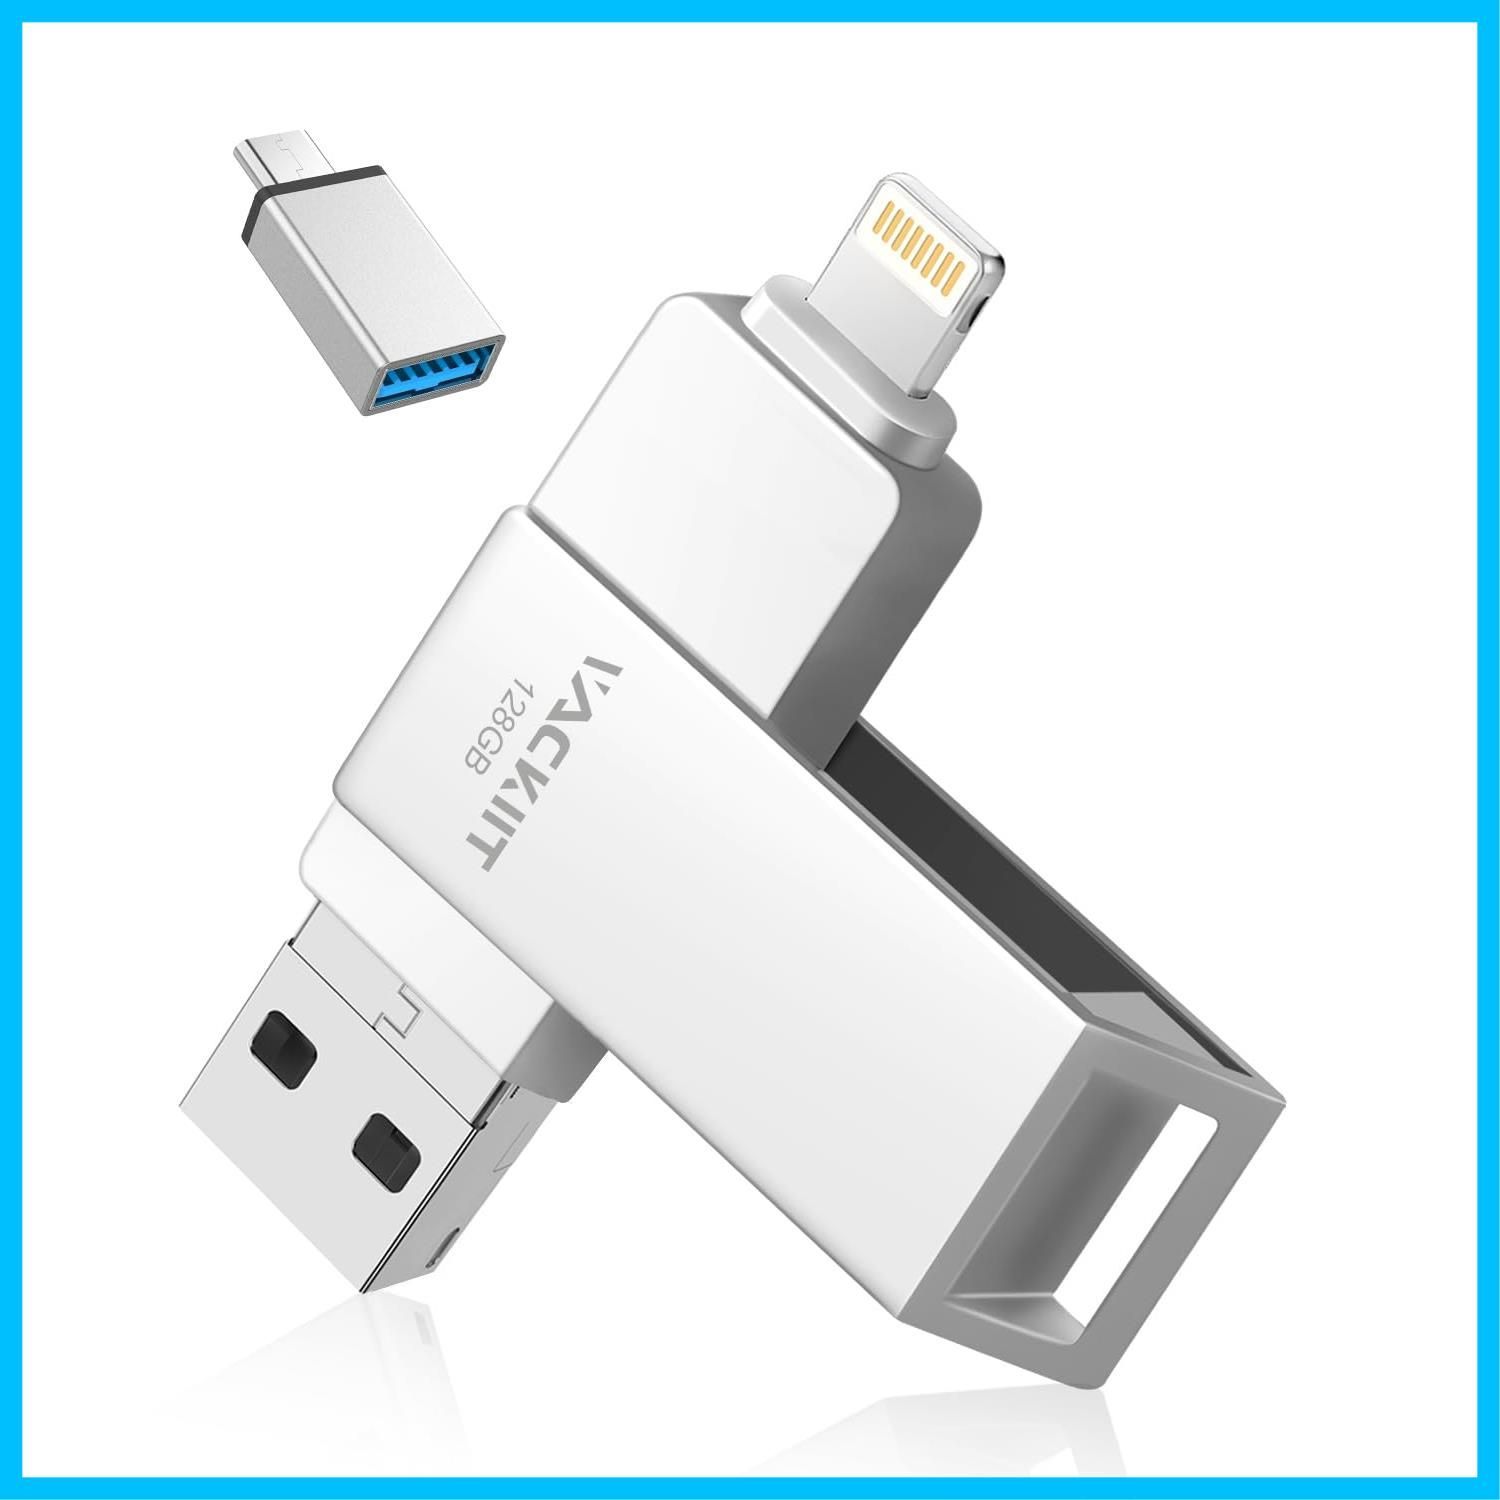 数量限定】Vackiit 【MFi認証取得】iPhone用USBメモリー 128GB USBフラッシュドライブ 高速USB 3.0 フラッシュメモリー  スマホ データ保存 写真 バックアップ lightningコネクタ搭載 iPhone/iPad/PC/An - メルカリ